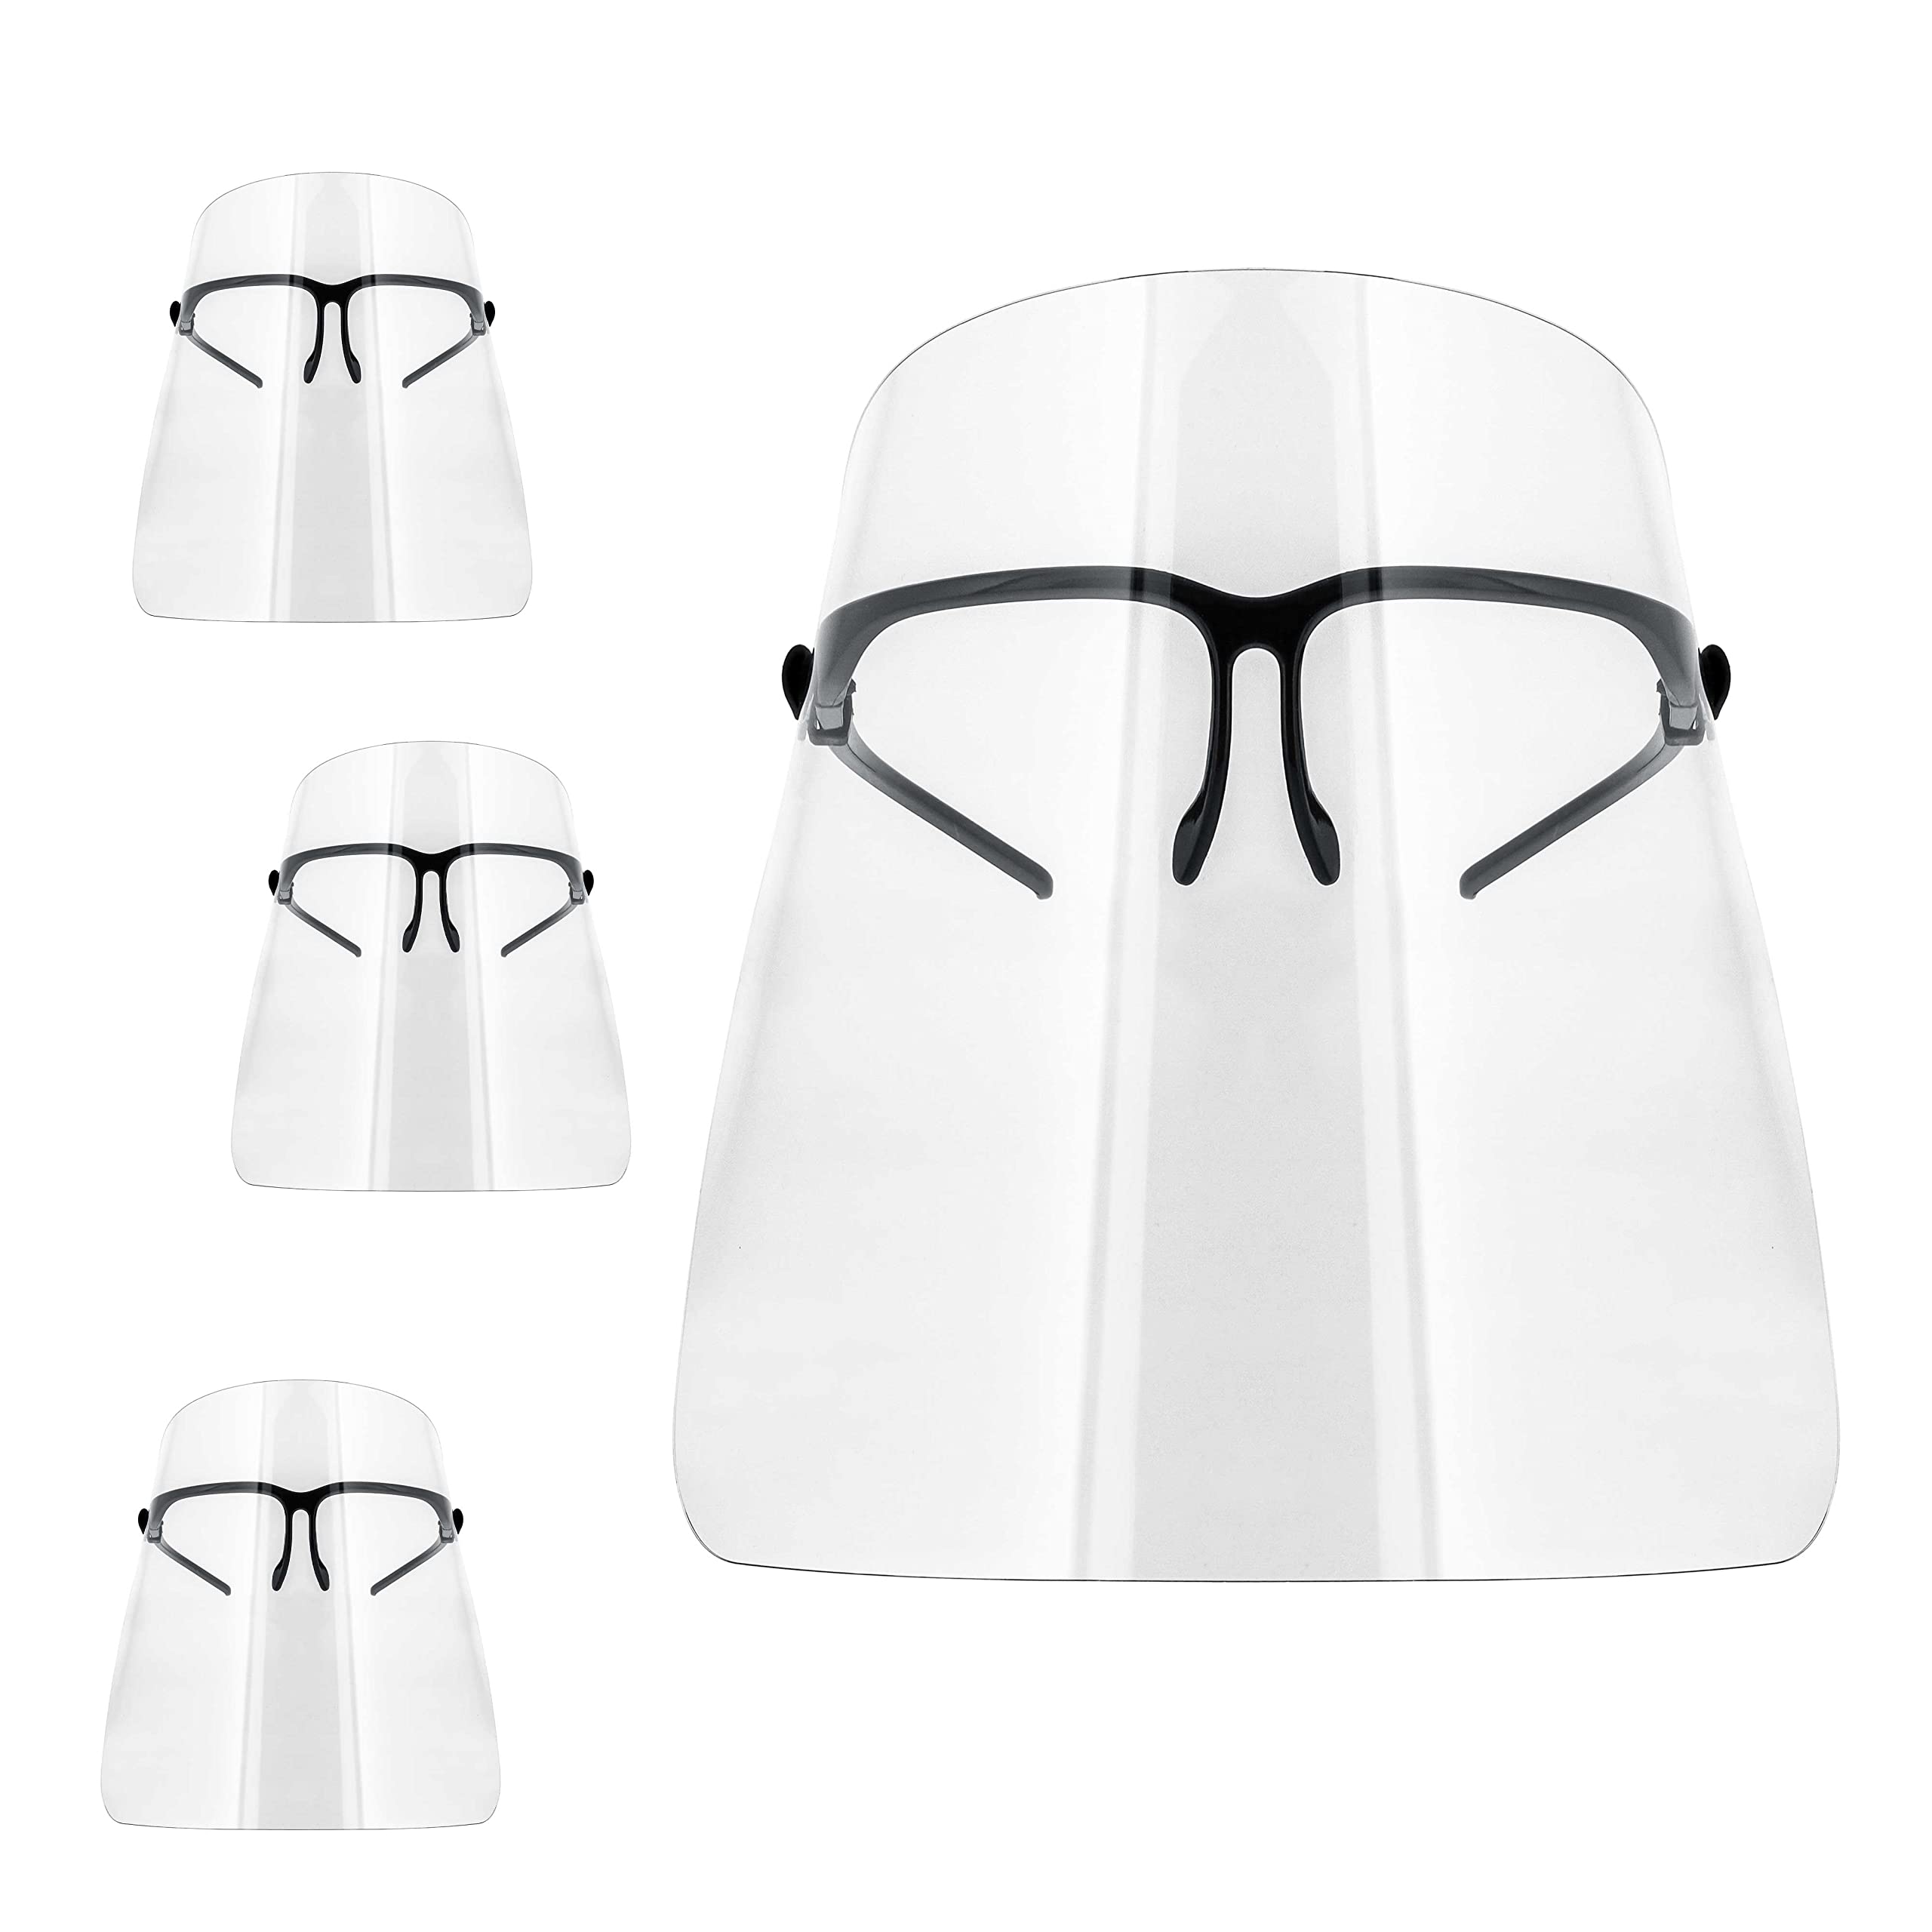 TCP Global Salon World Safety Face Shields com armações de óculos (Pacote com 10) - Ultra Clear Protetor Full Face Shields